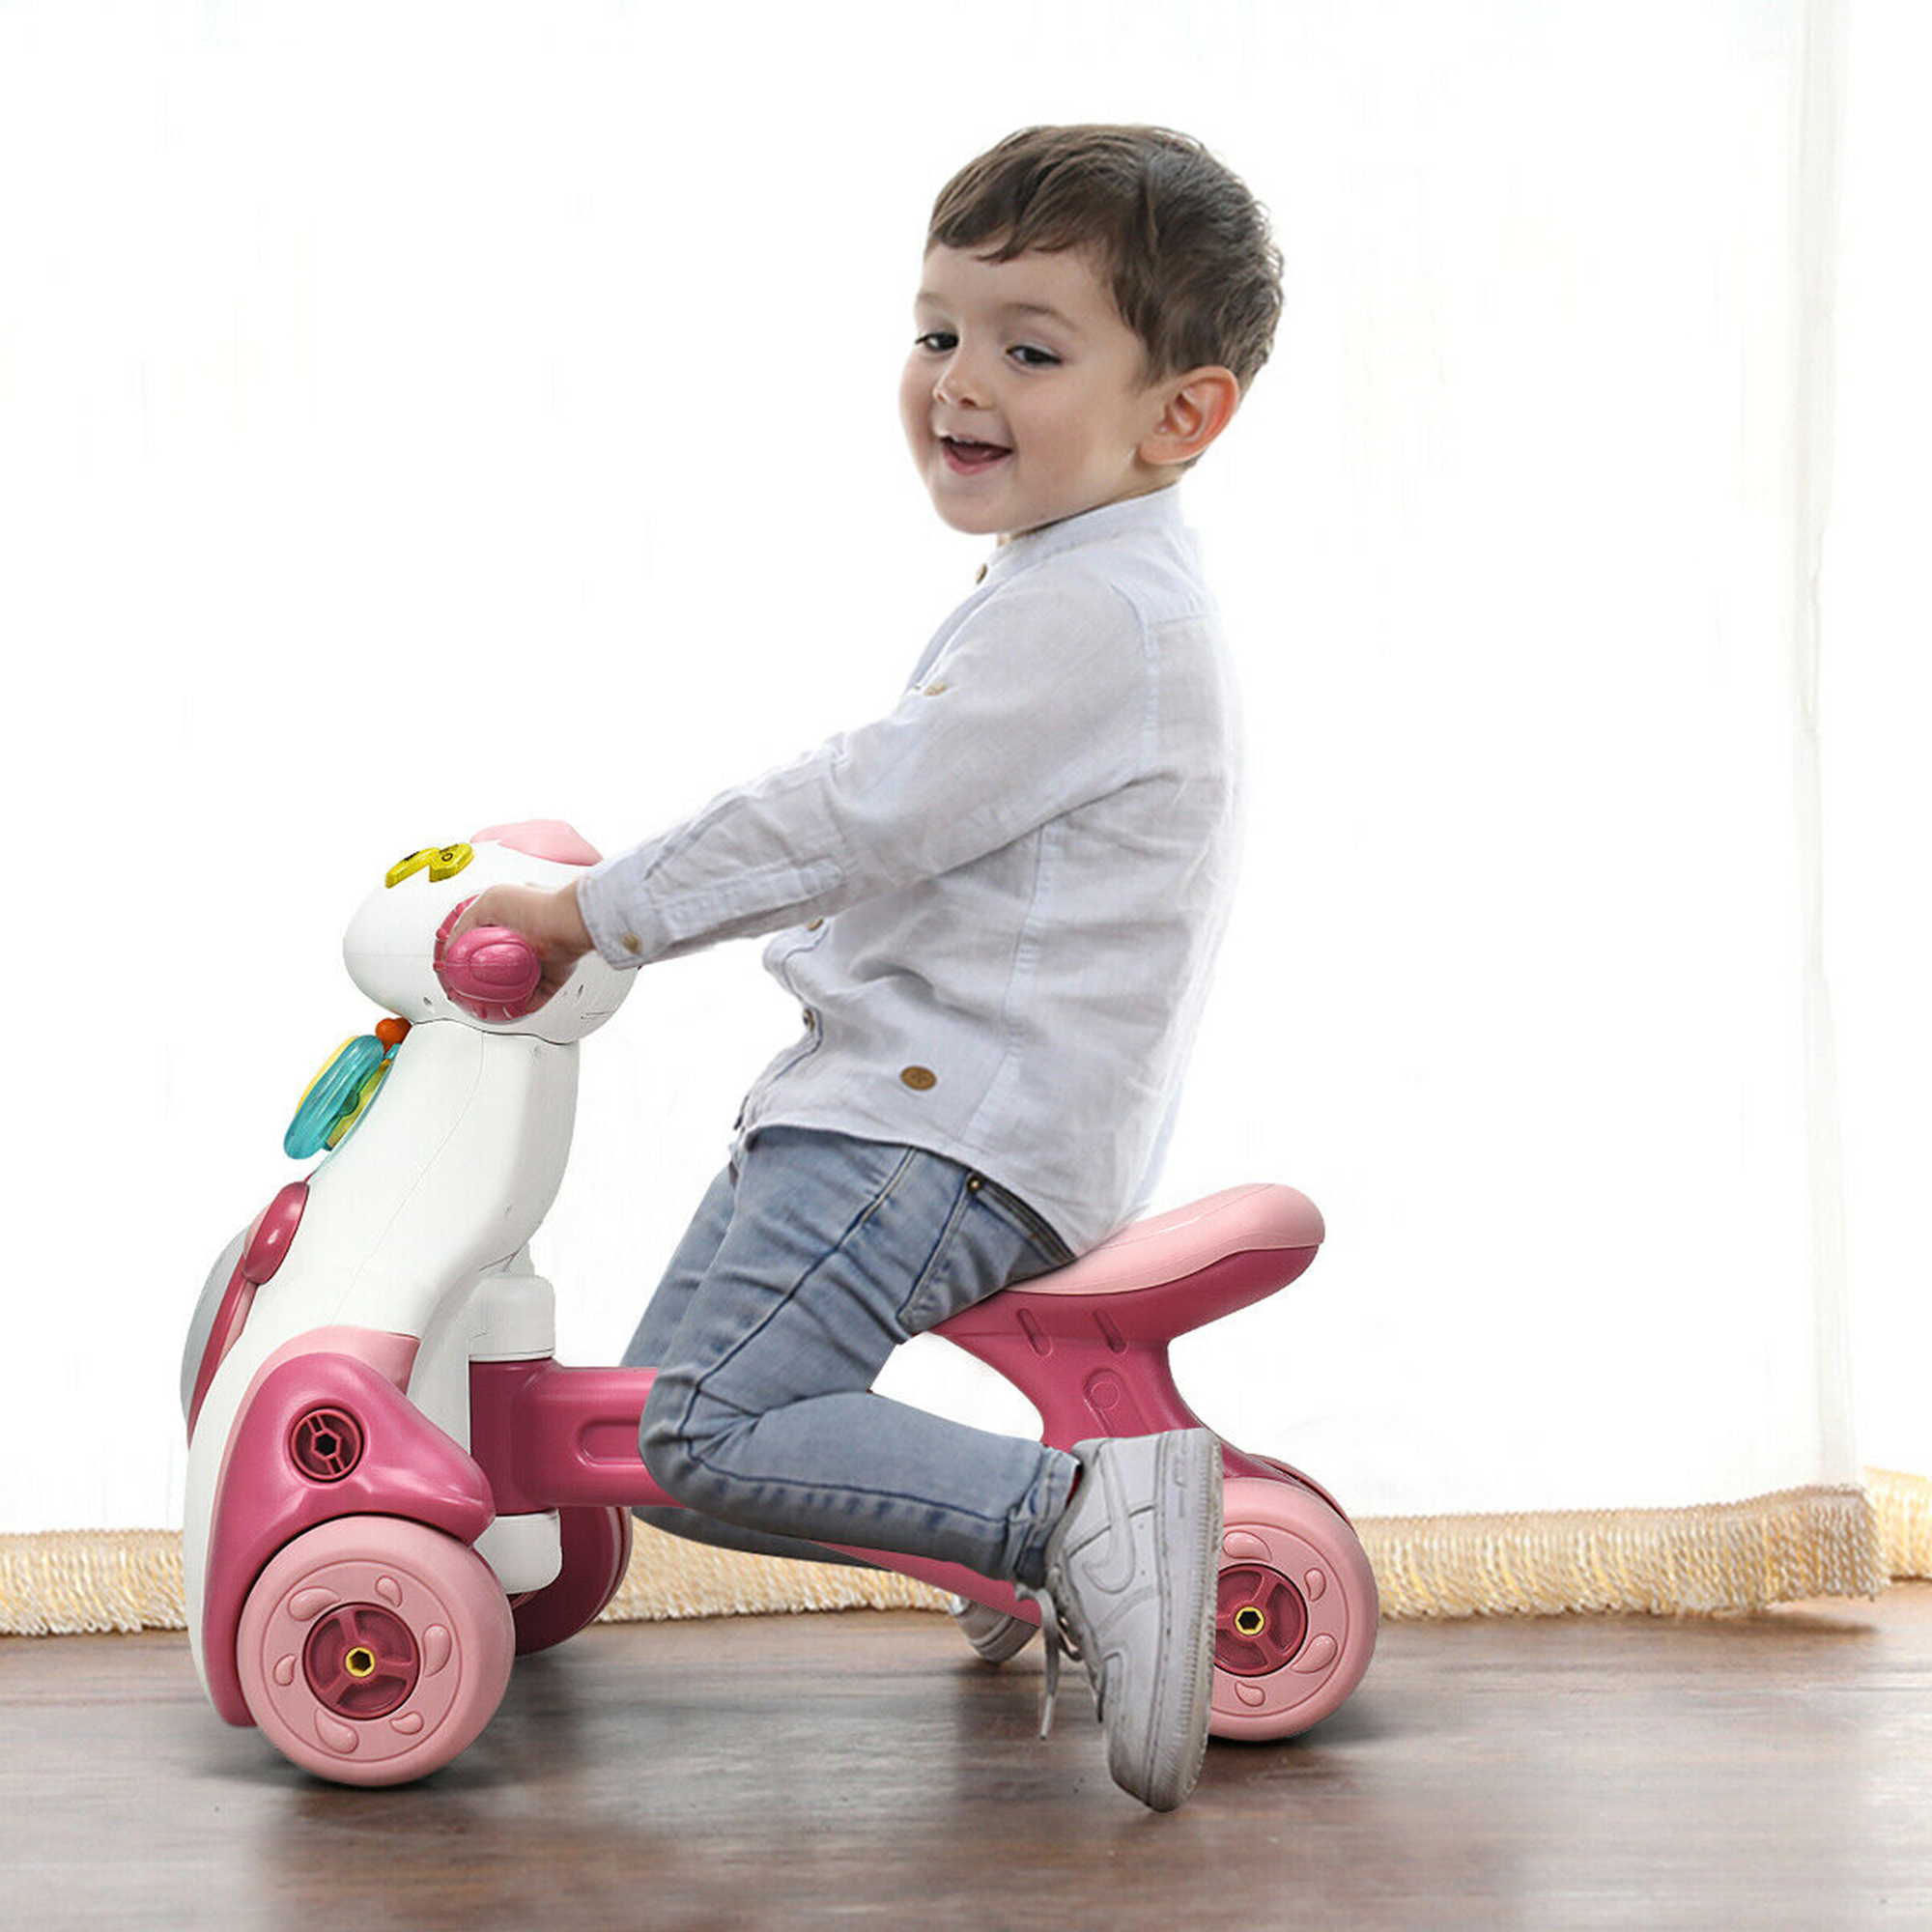 Gymax Baby Balance Bike Musical Ride Toy w/ Sensing Function & Light Toddler Walker - image 3 of 10